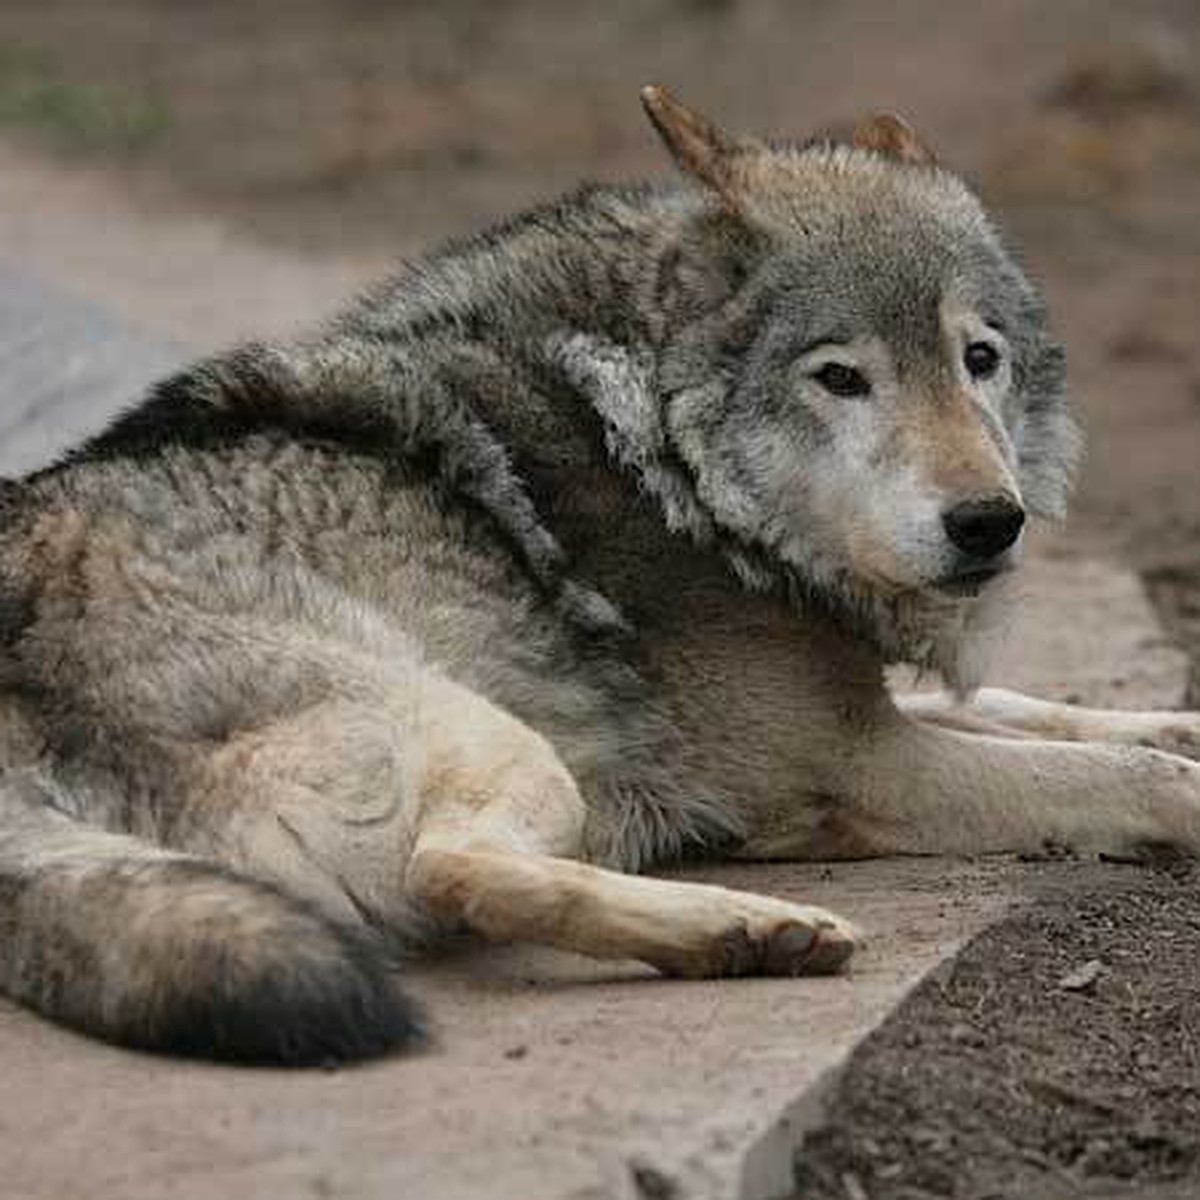 Тамбовский волк